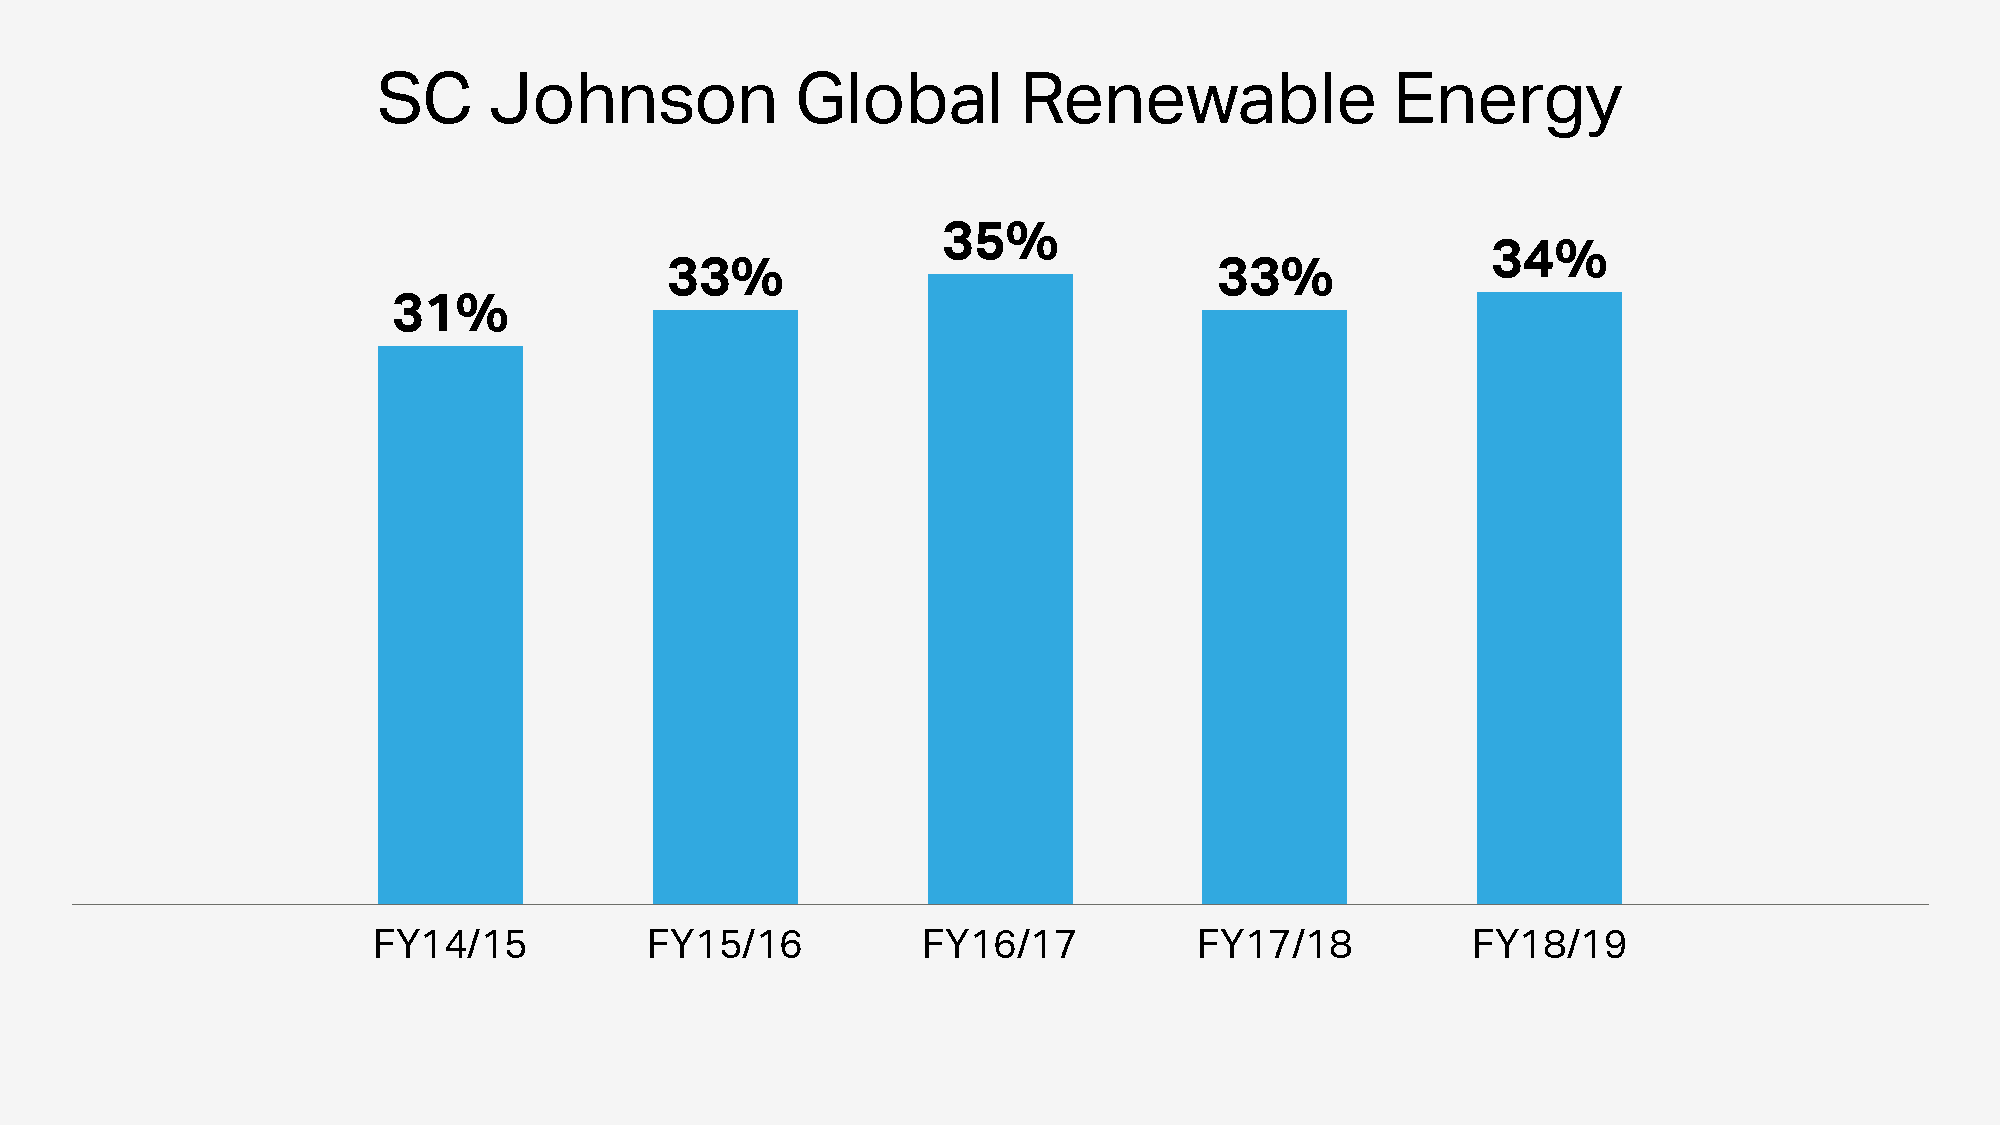 SC Johnson globale erneuerbare Energie im Laufe der Jahre